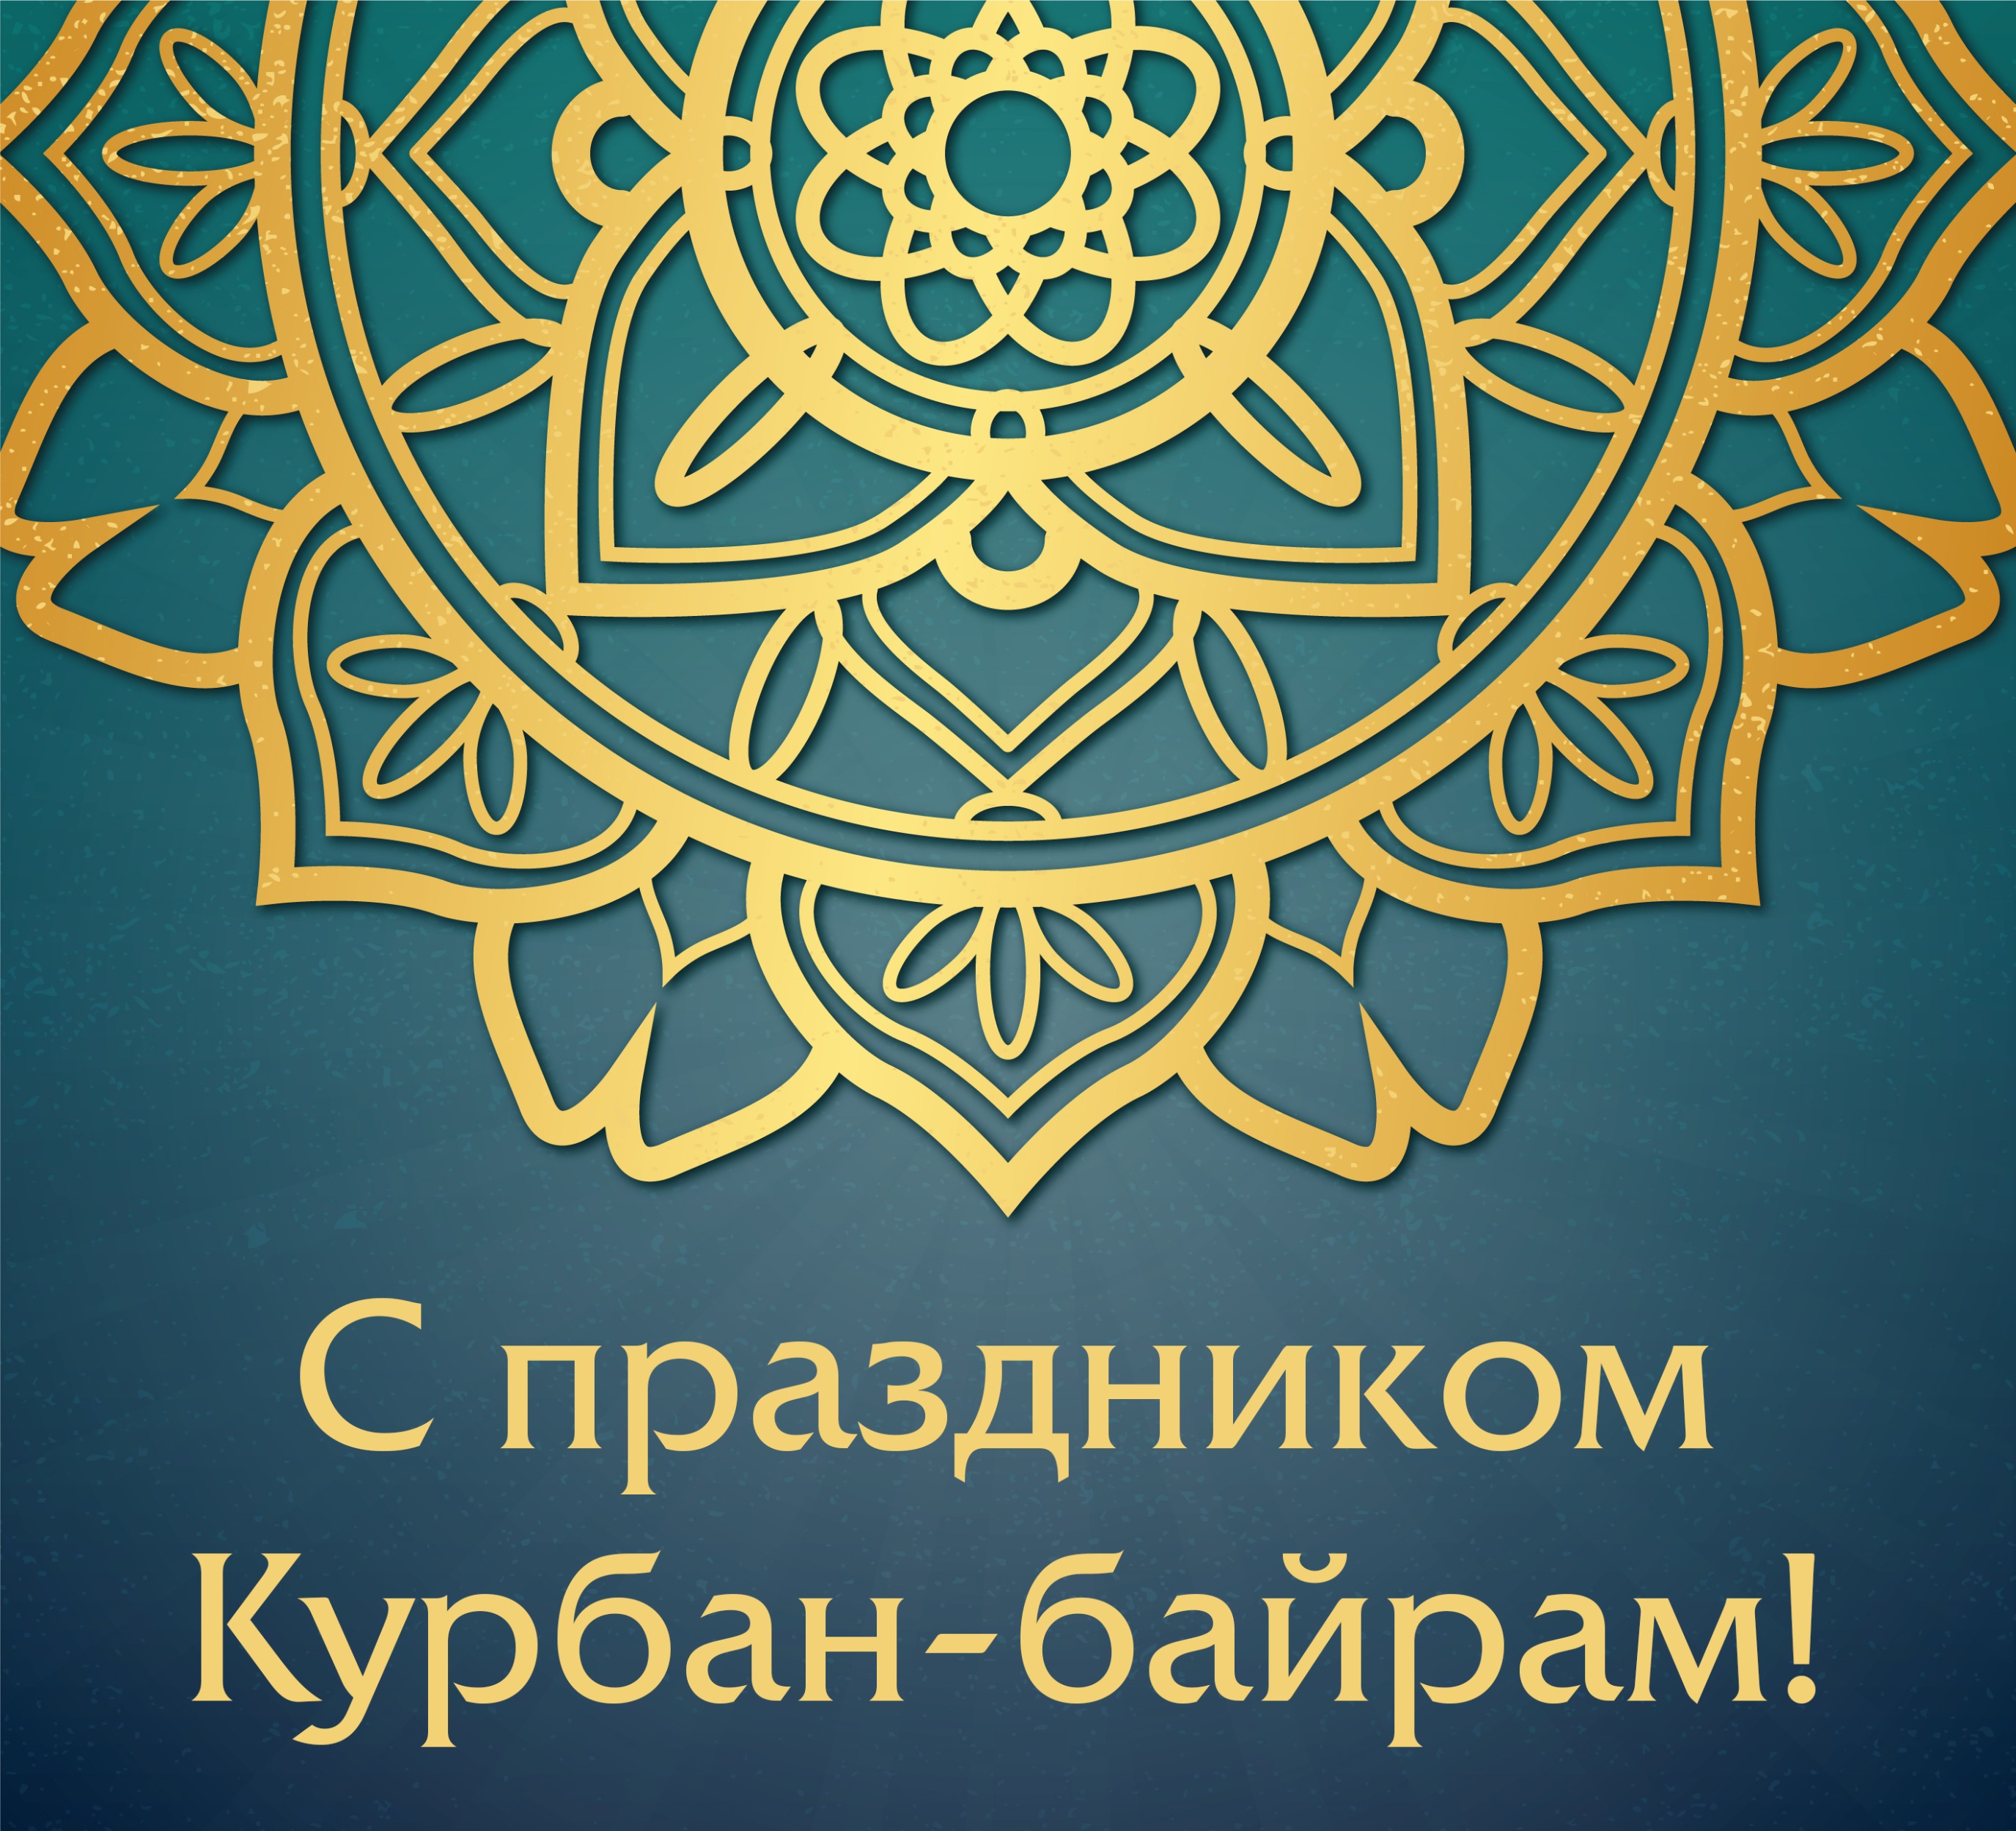 Поздравление мусульманам России с праздником Курбан-байрам.